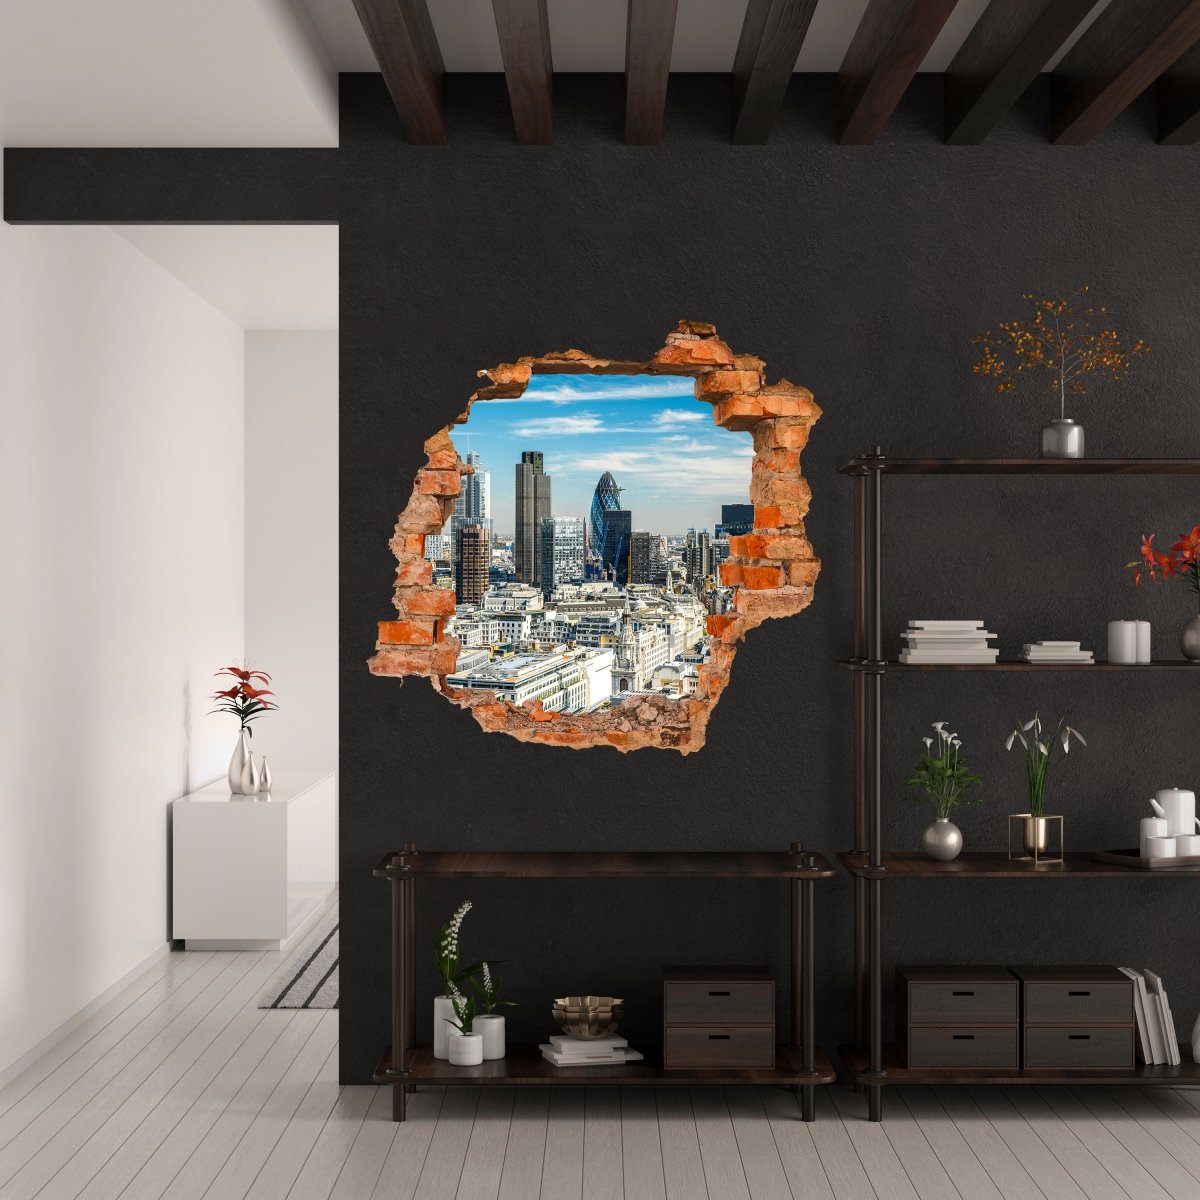 Sticker mural 3D London skyline - Wall Decal M0296